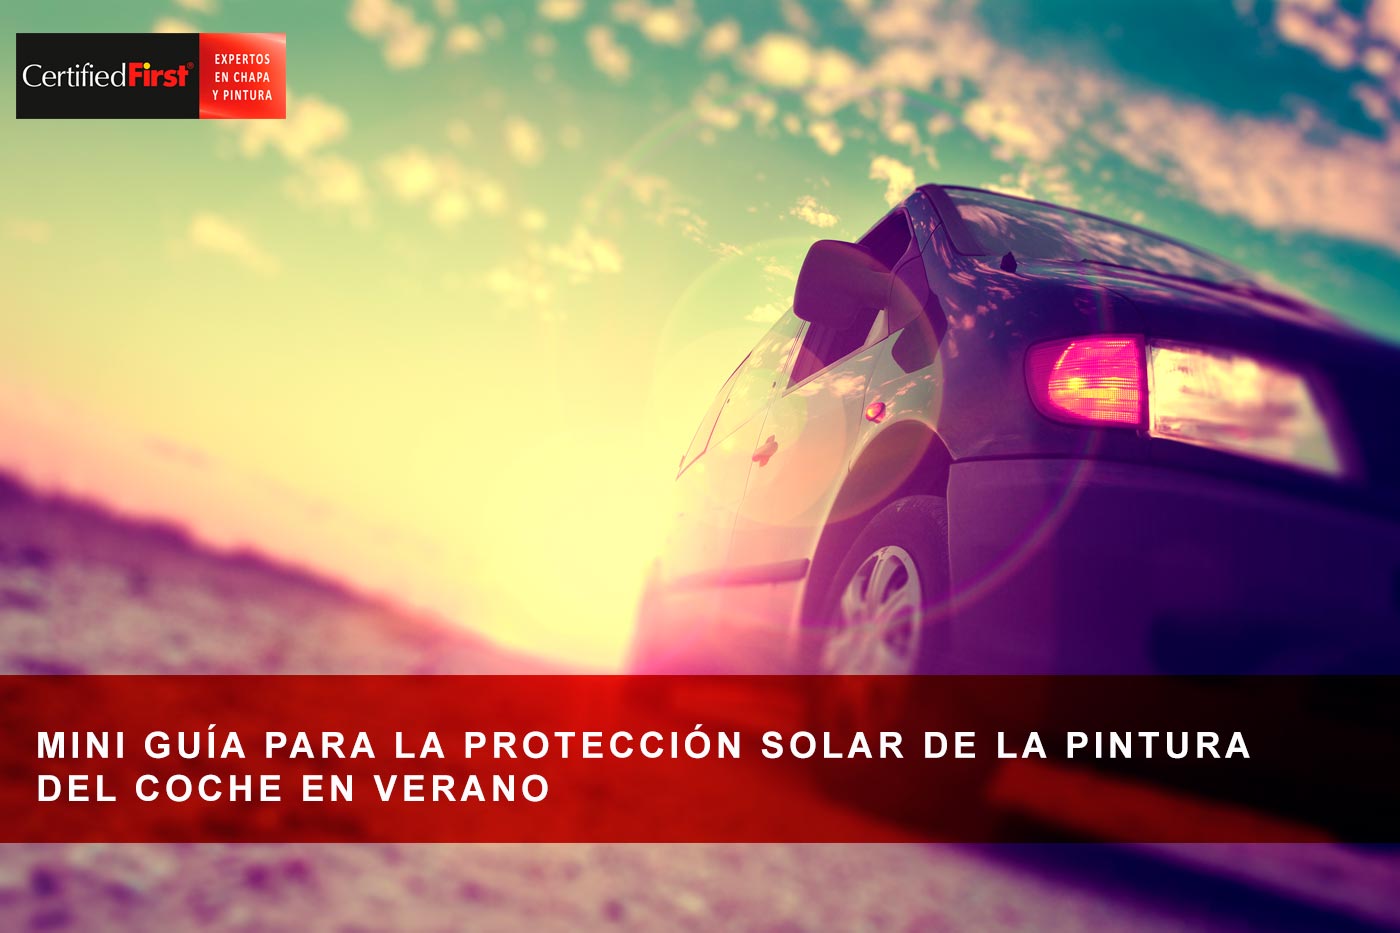 Mini guía para la protección solar de la pintura del coche en verano